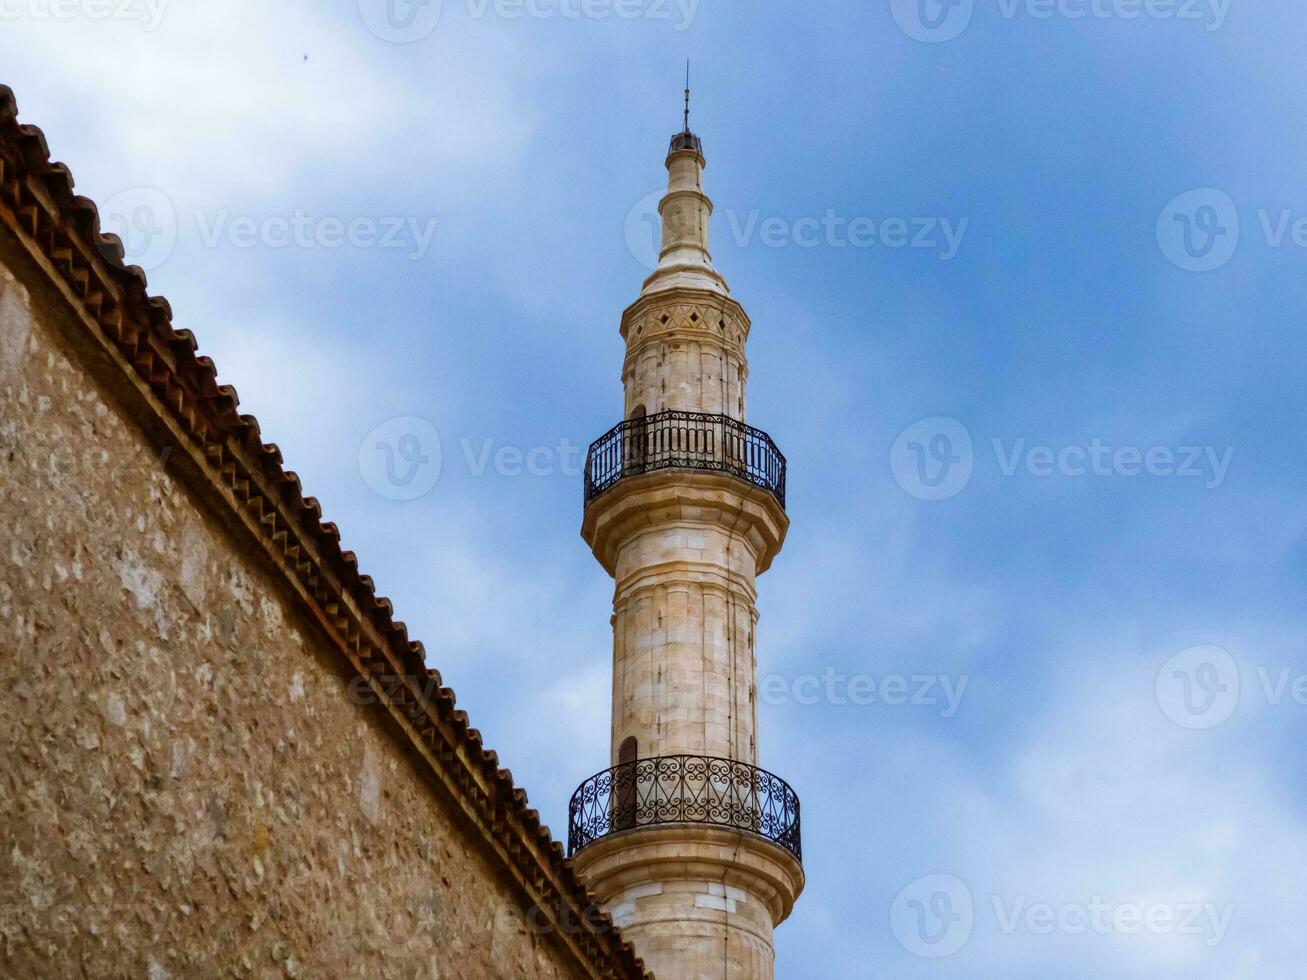 minarete do velho mesquita imponente sobre a parede dentro a velho parte do rethymno - Creta, Grécia foto